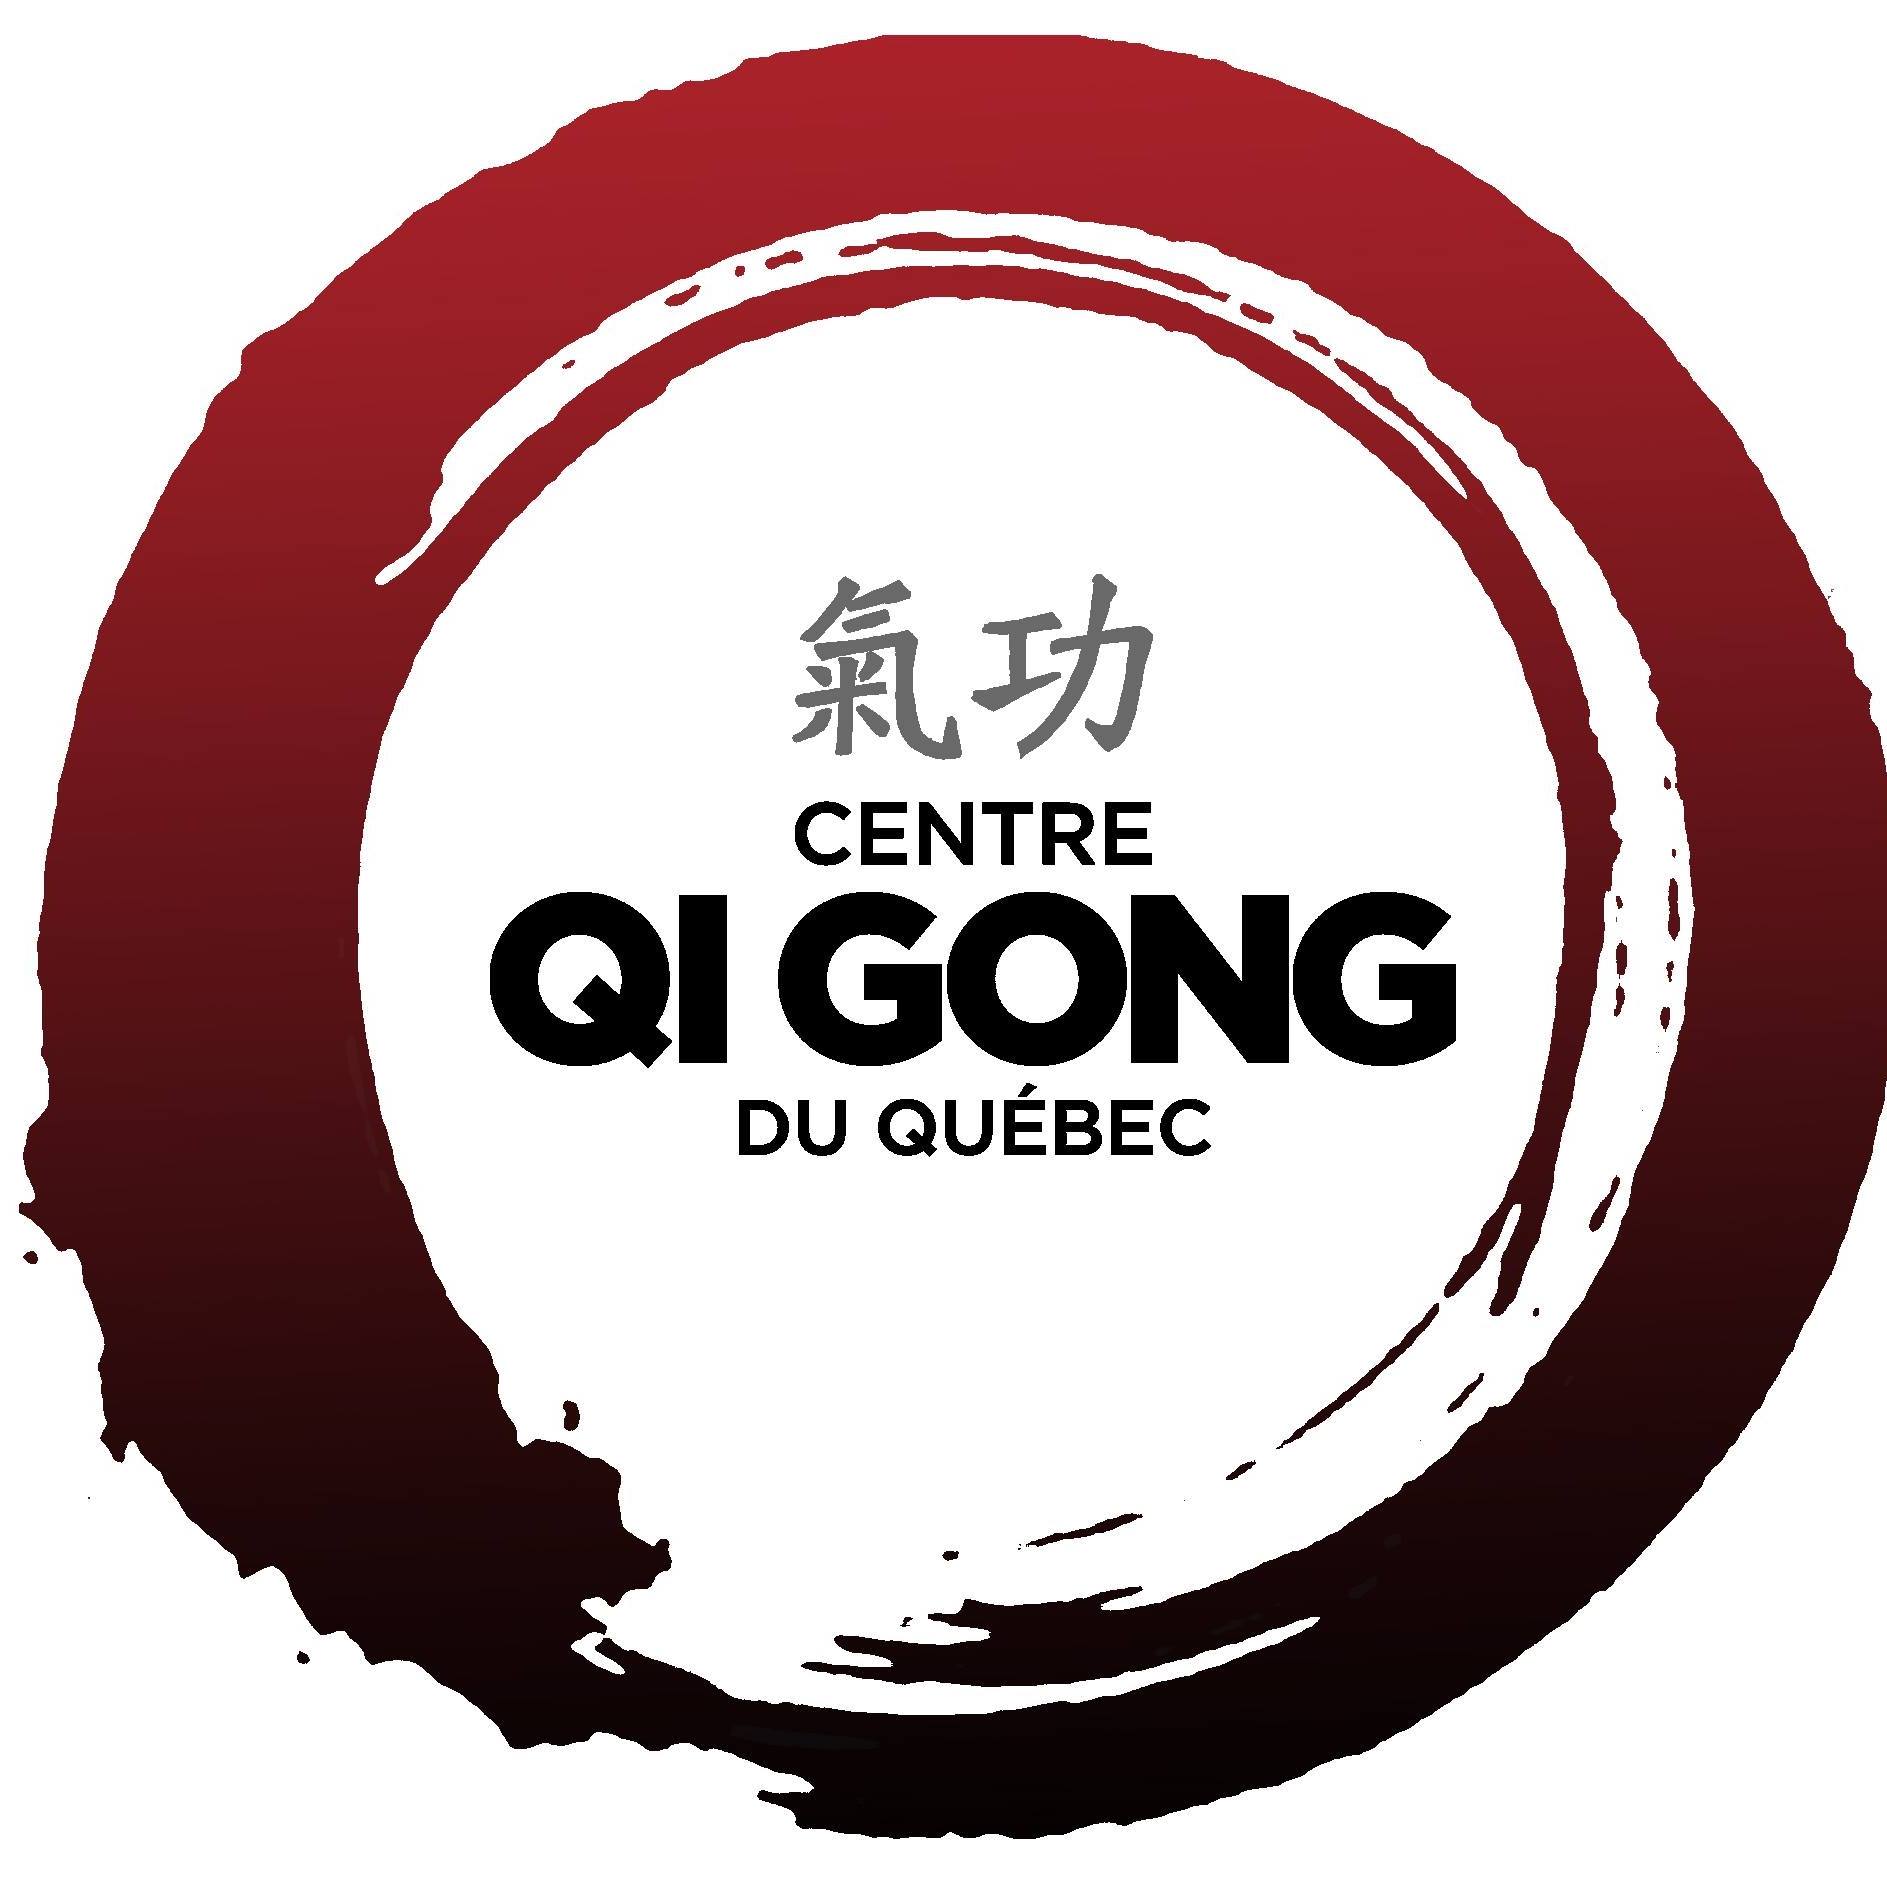 Annuaire Centre Qi Gong du Québec